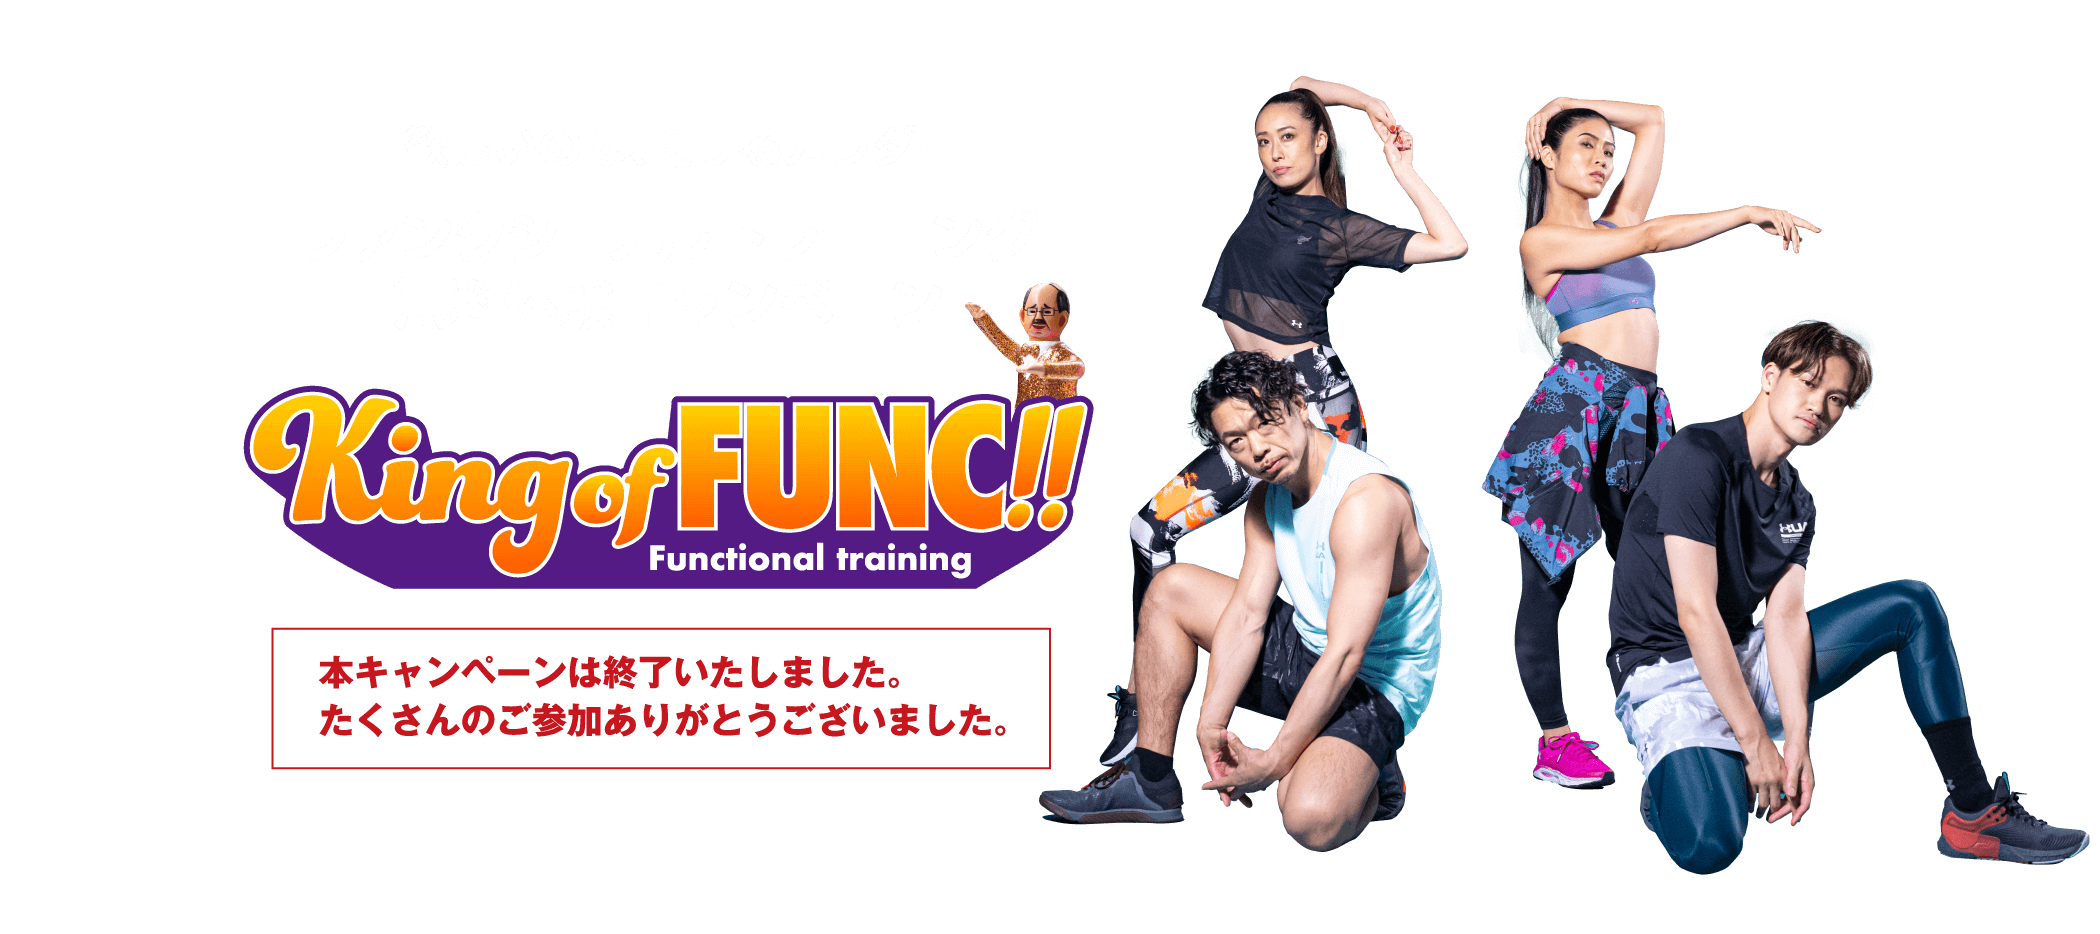 【終了】ファンクショナルトレーニング無料体験キャンペーン